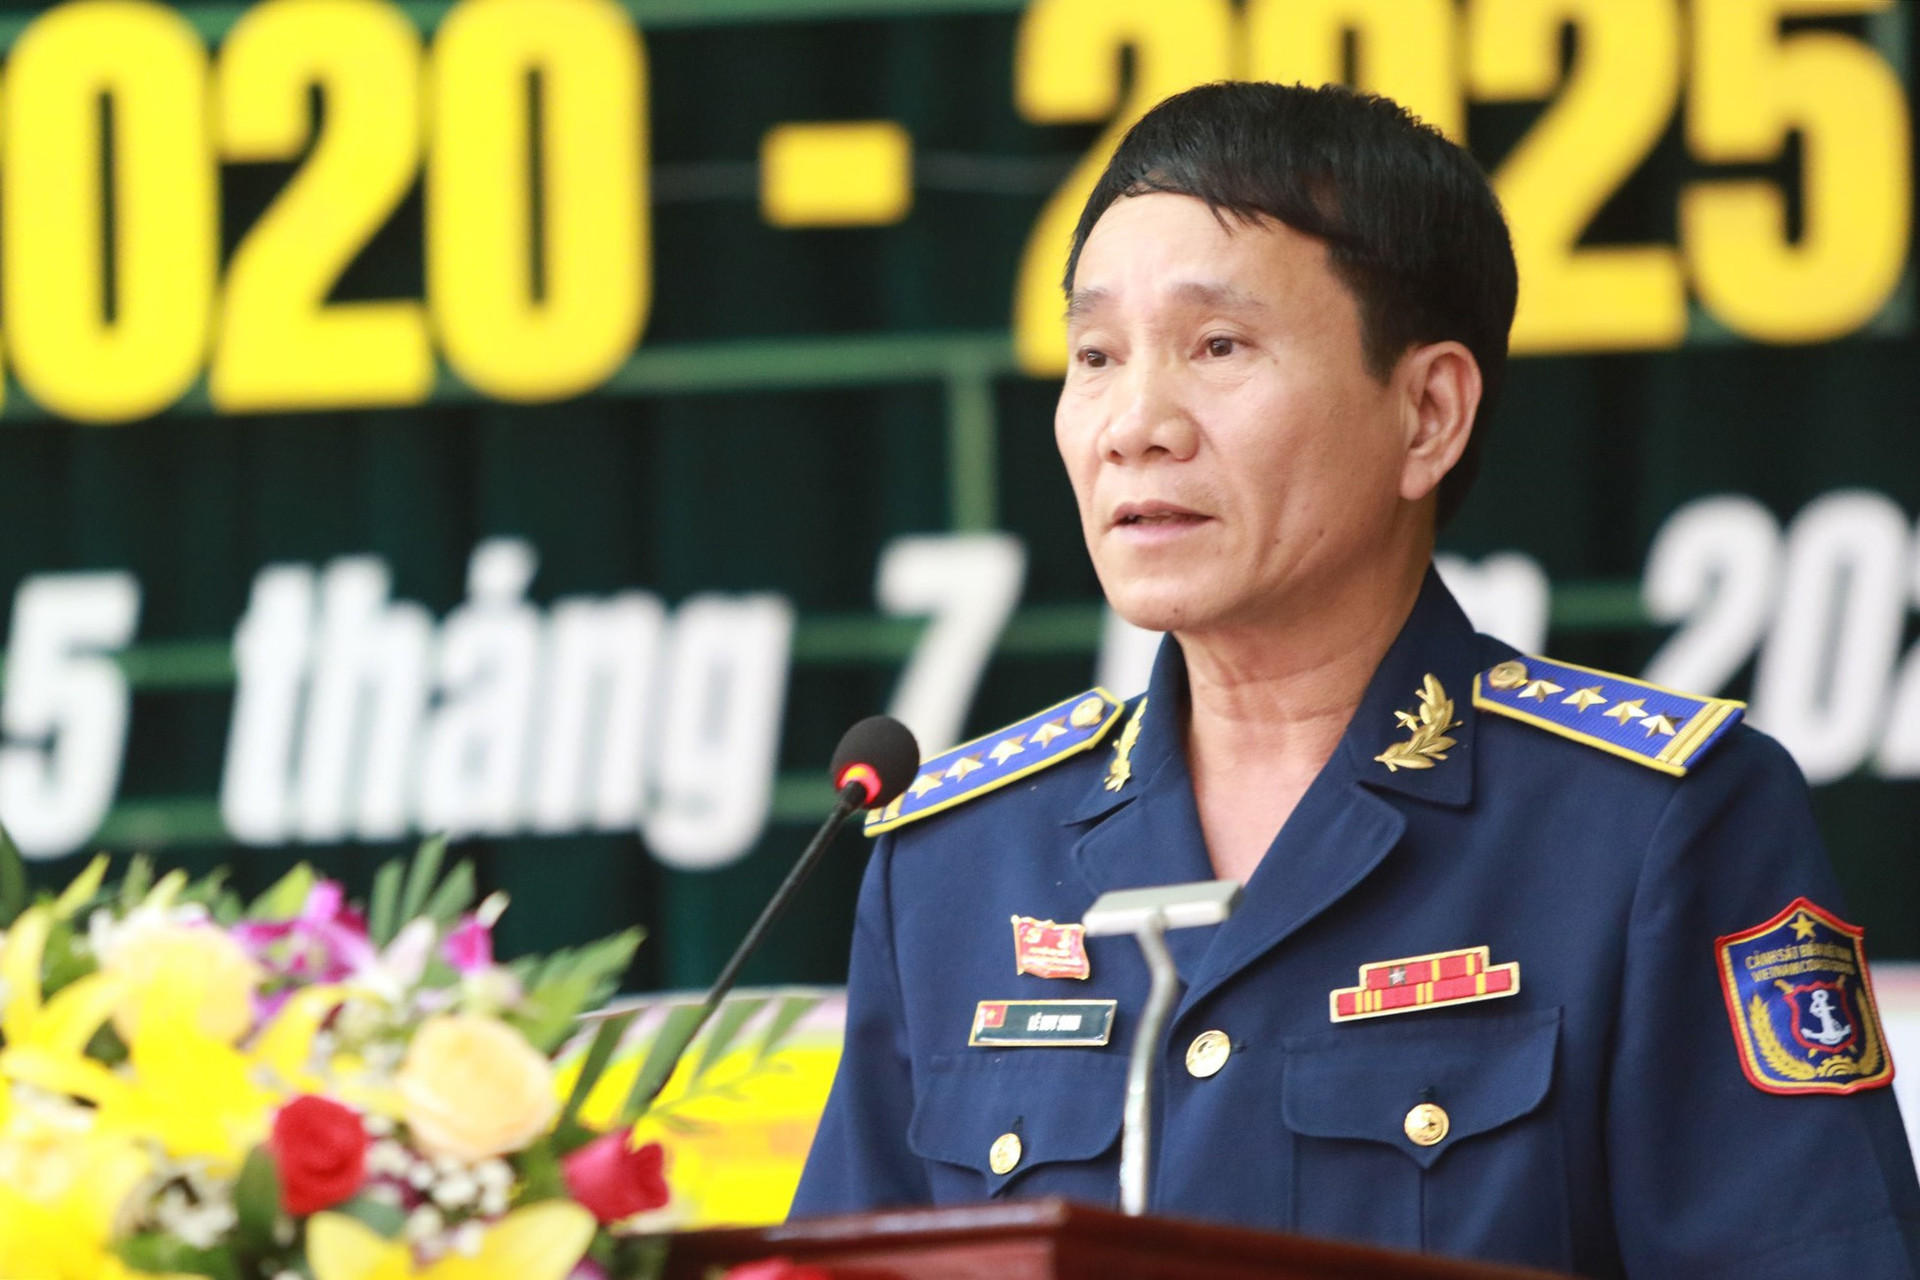 Đại tá Lê Huy Sinh - Chính ủy Bộ tư lệnh Vùng Cảnh sát biển 2 phát biểu khai mạc đại hội. Ảnh: T.C